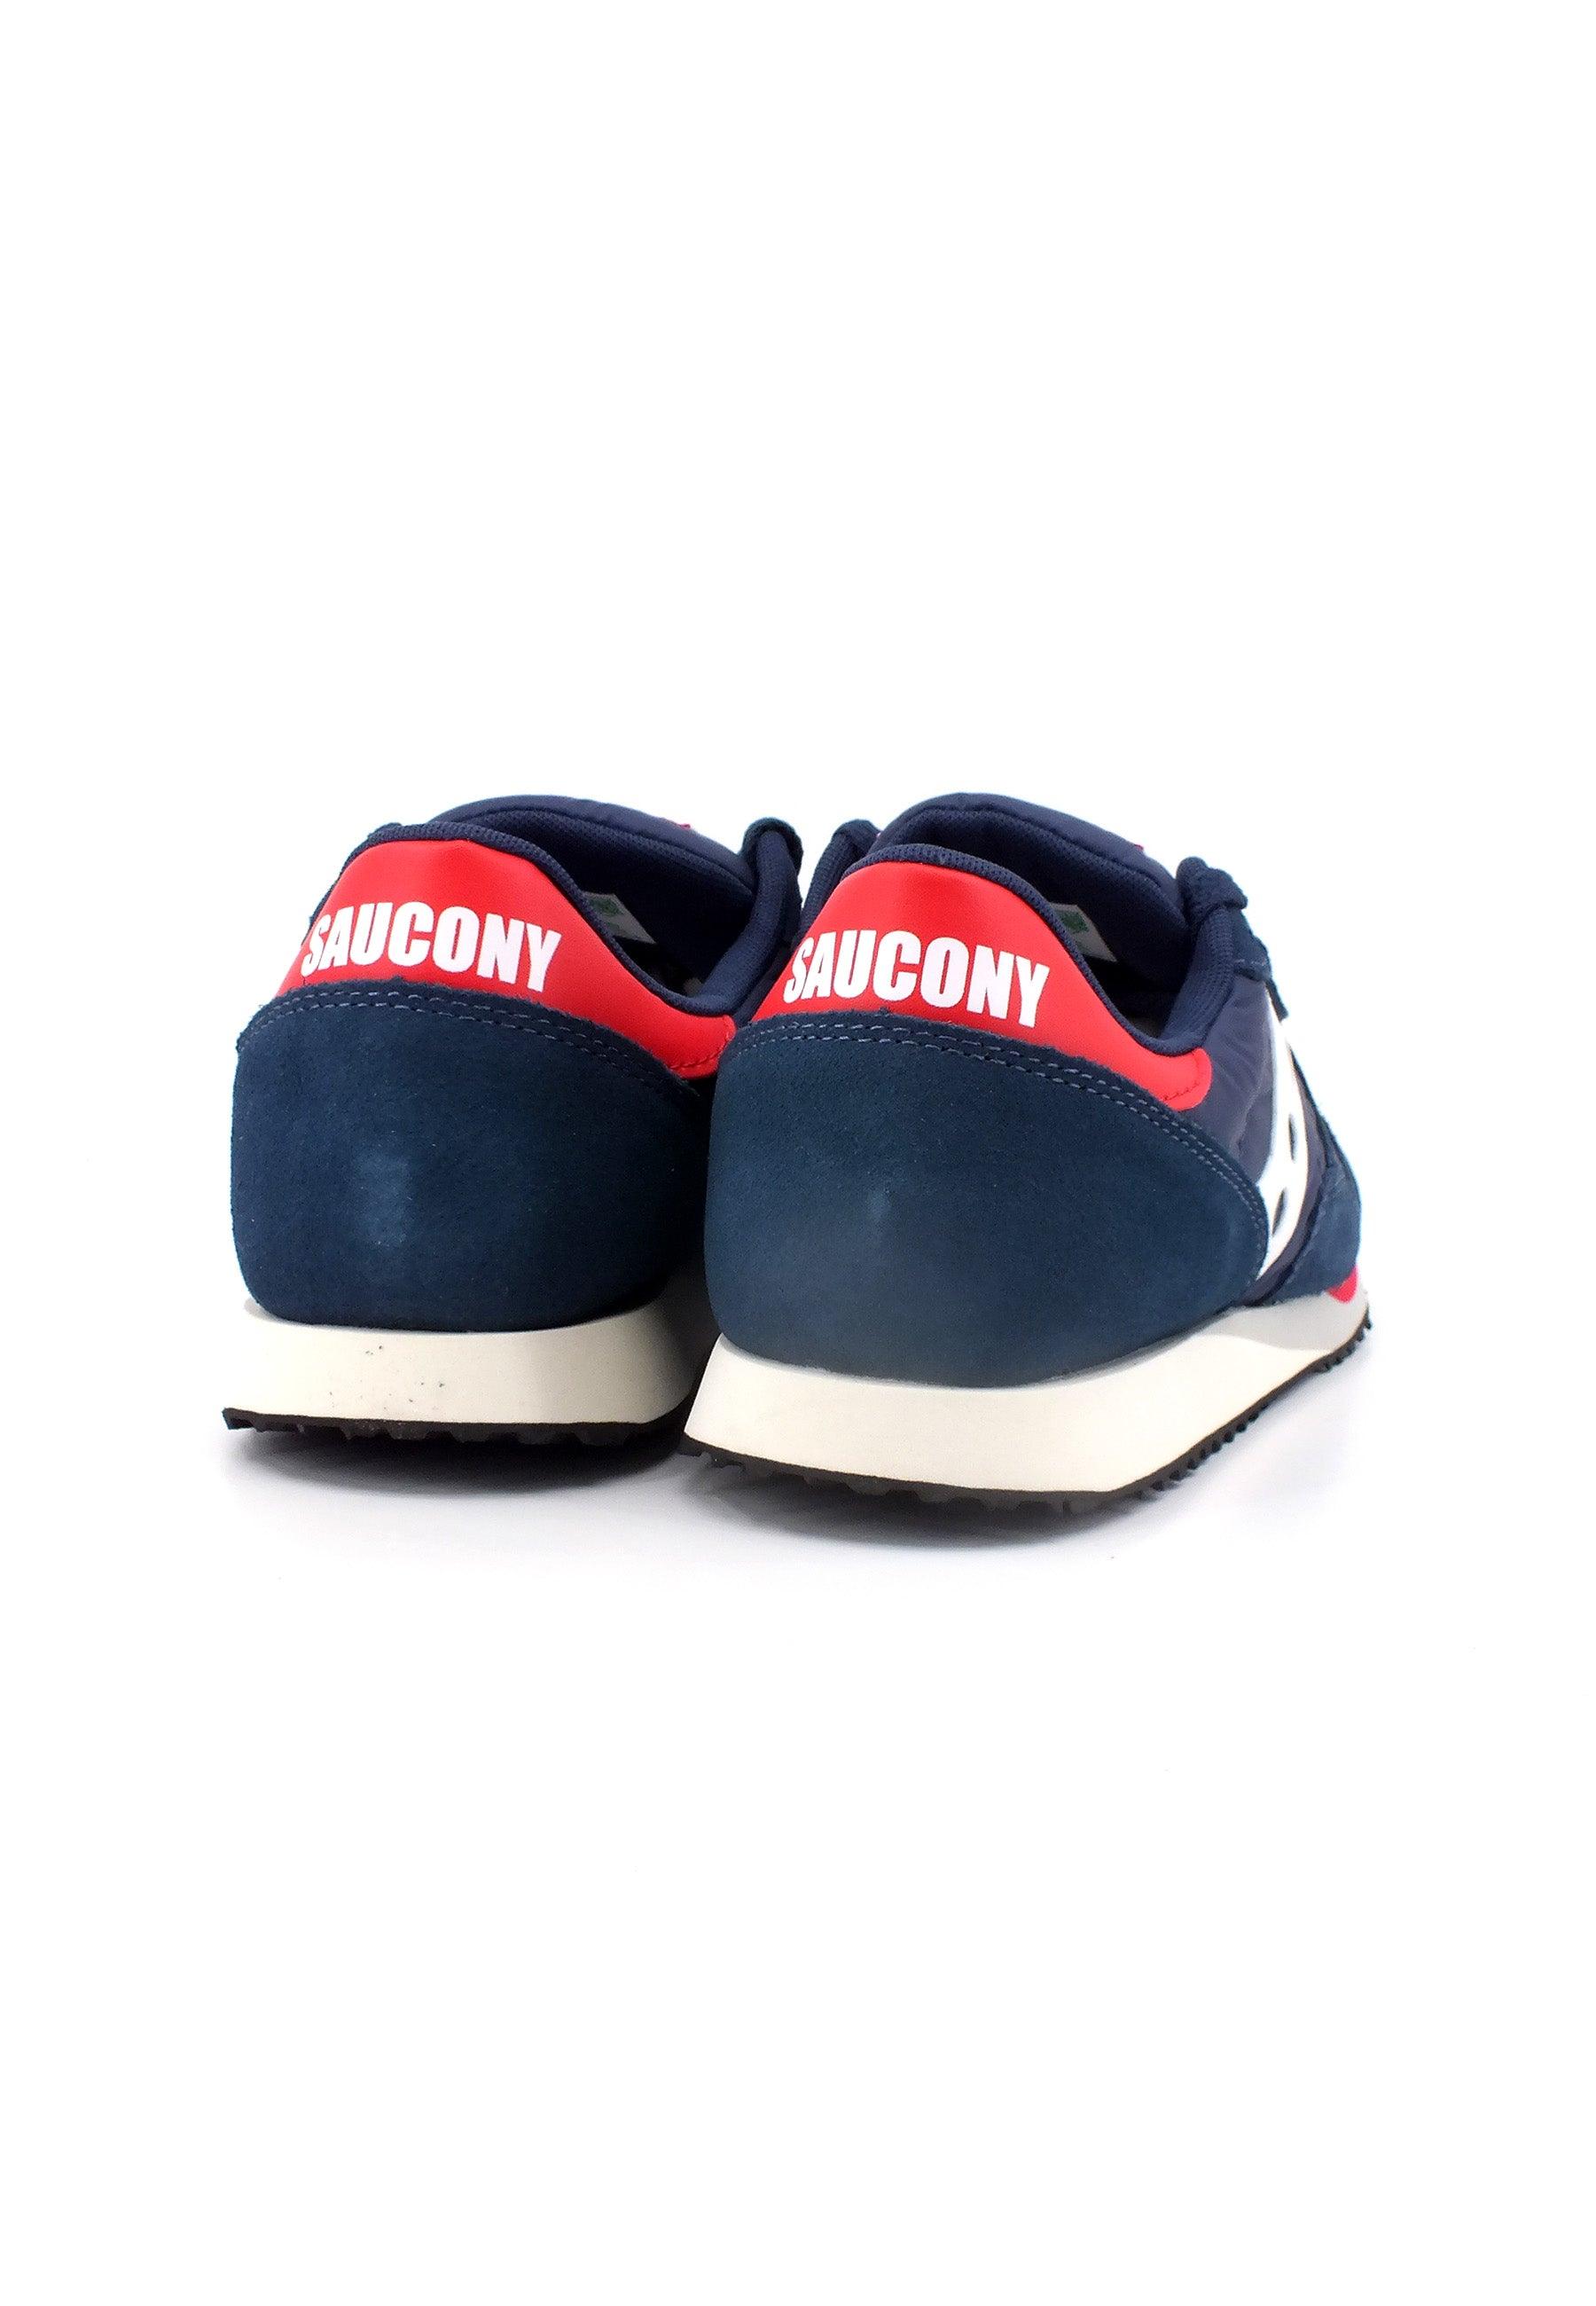 SAUCONY Dxn Trainer Vintage Sneaker Uomo Navy White S70757-3 - Sandrini Calzature e Abbigliamento